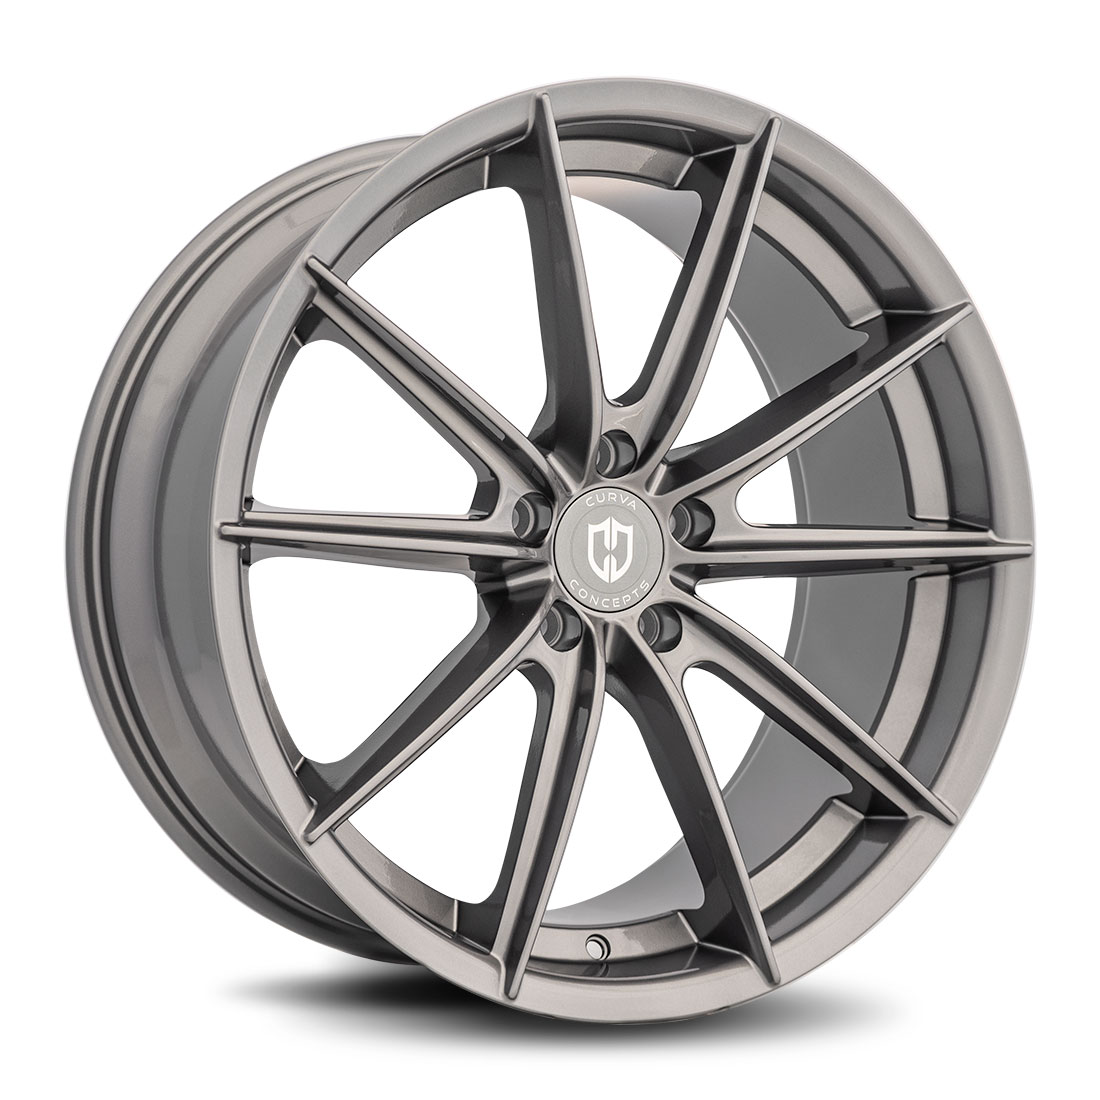 Curva Concepts C46 Gloss Gunmetal Aftermarket Wheels